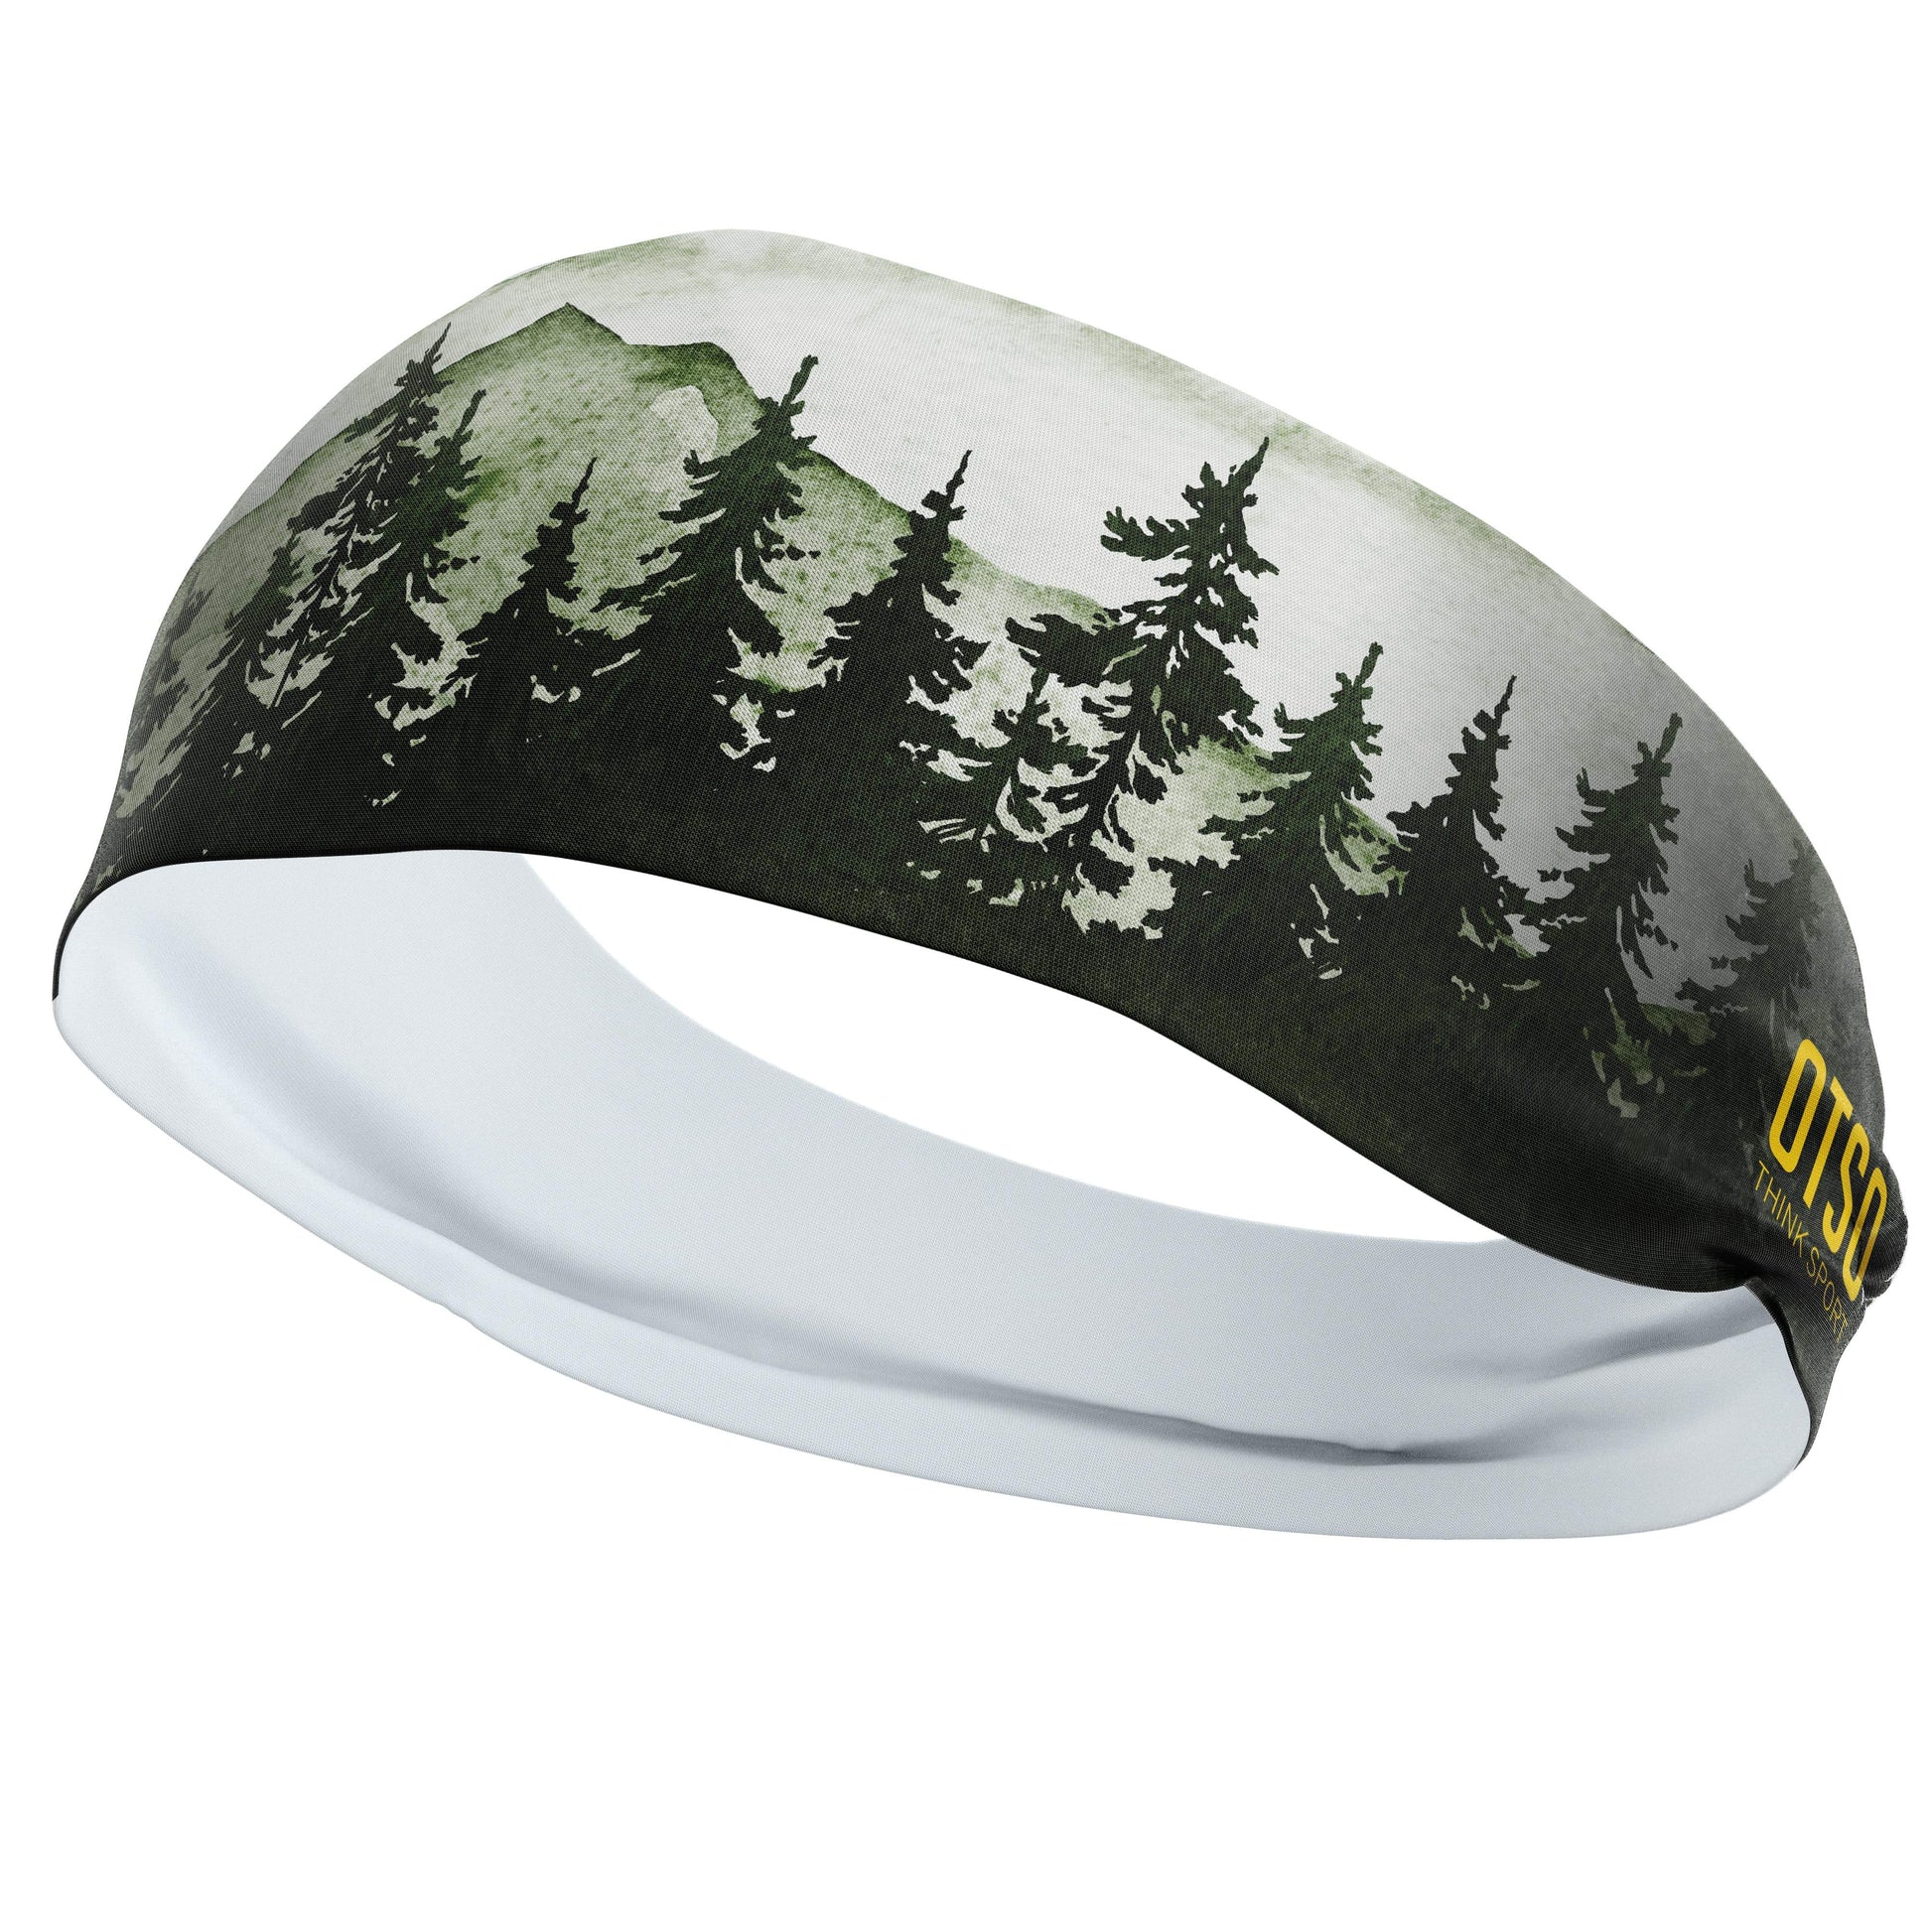 Headband Otso de 12 centímetros de grosor y estampado de árboles de color verde. El producto es unisex y de talla única